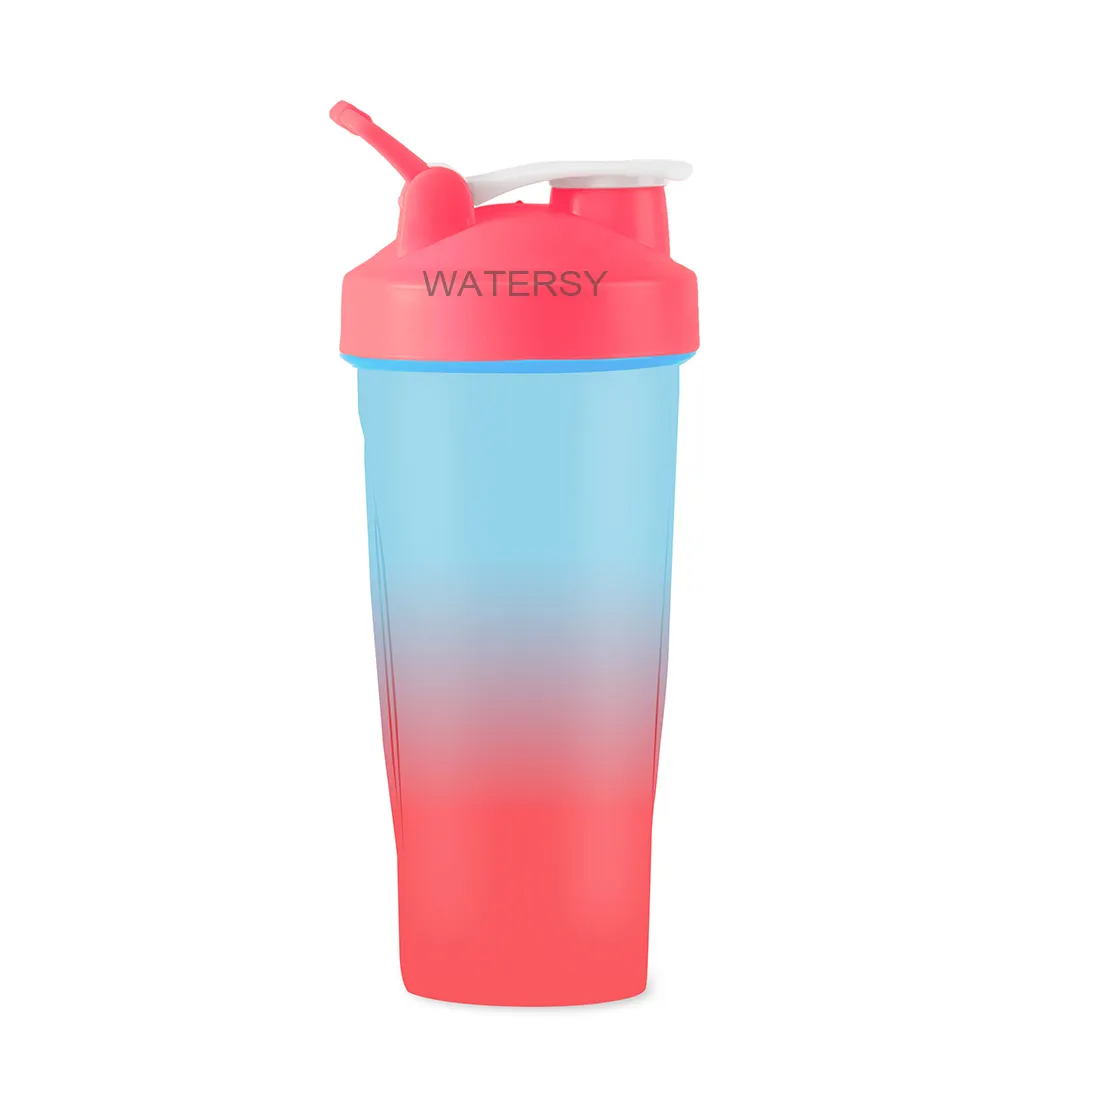 Großhandel Fabrik preis BPA Free Custom Logo Protein Mixer Gummi Lagerung Clear Plastic Gym Sport Wasser Shaker Flasche